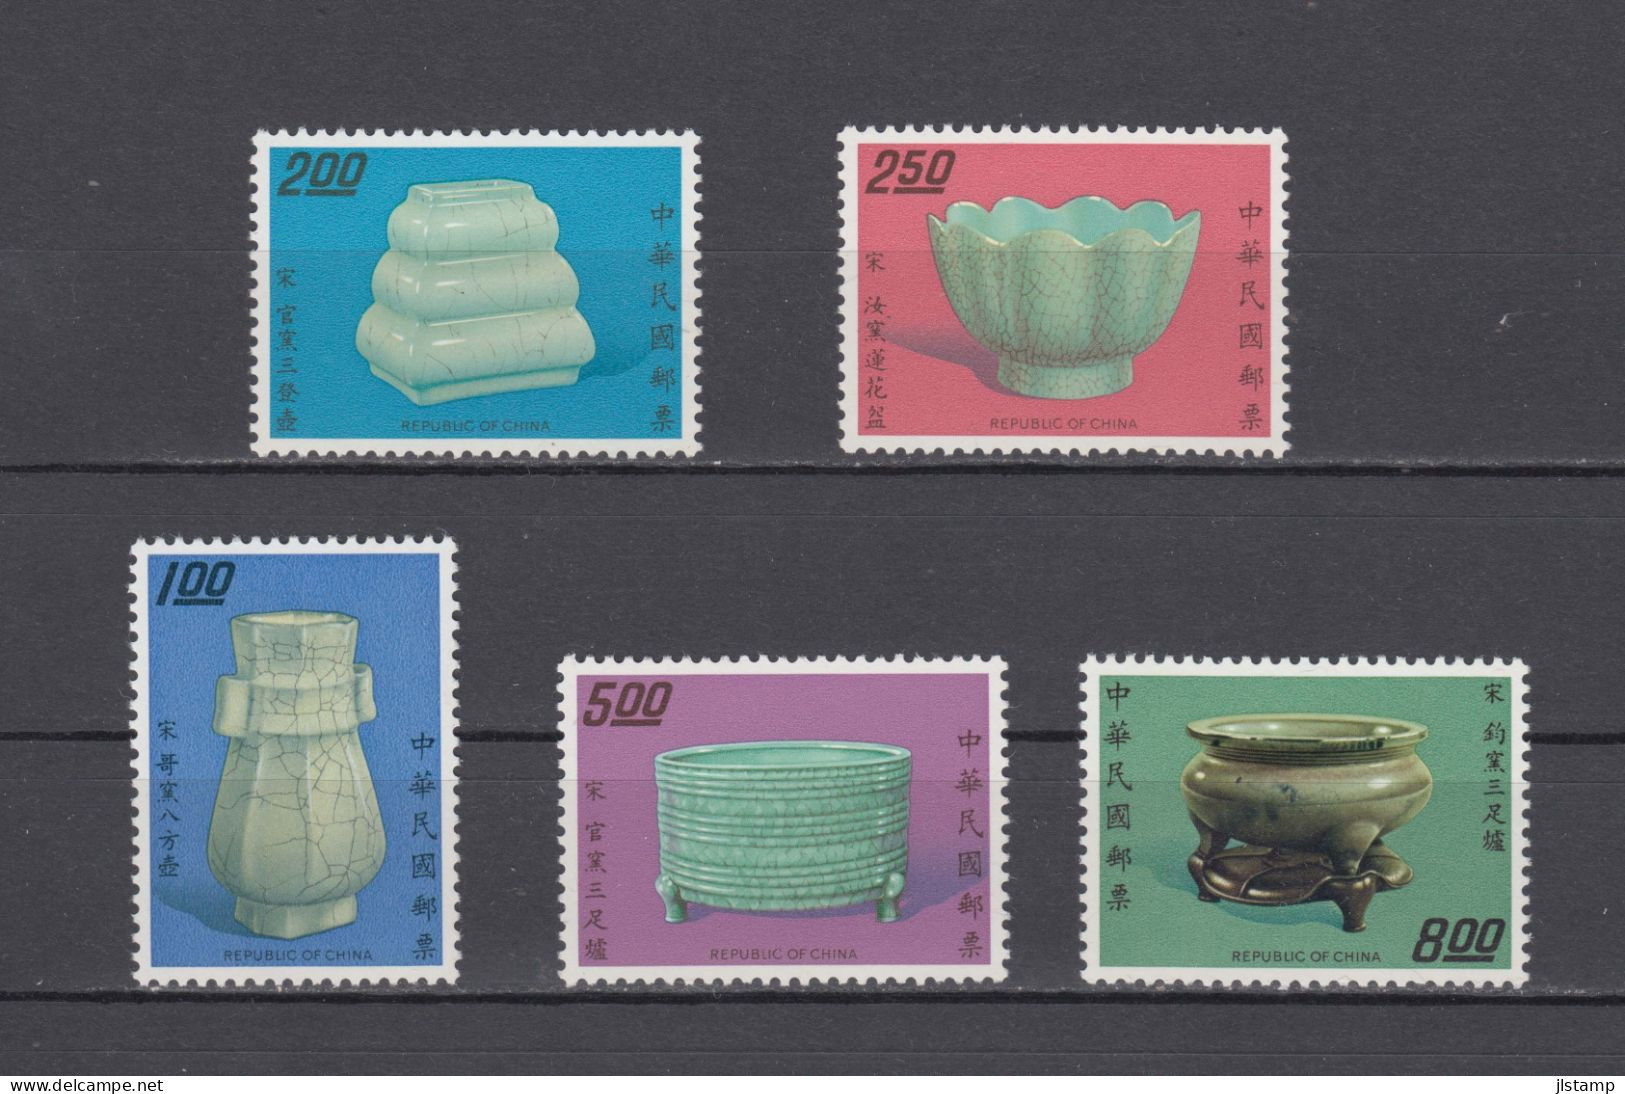 China Taiwan 1974 Porcelain Stamp Set,Scott#1864-1868, MNH,OG,VF, $1 Folded - Ongebruikt